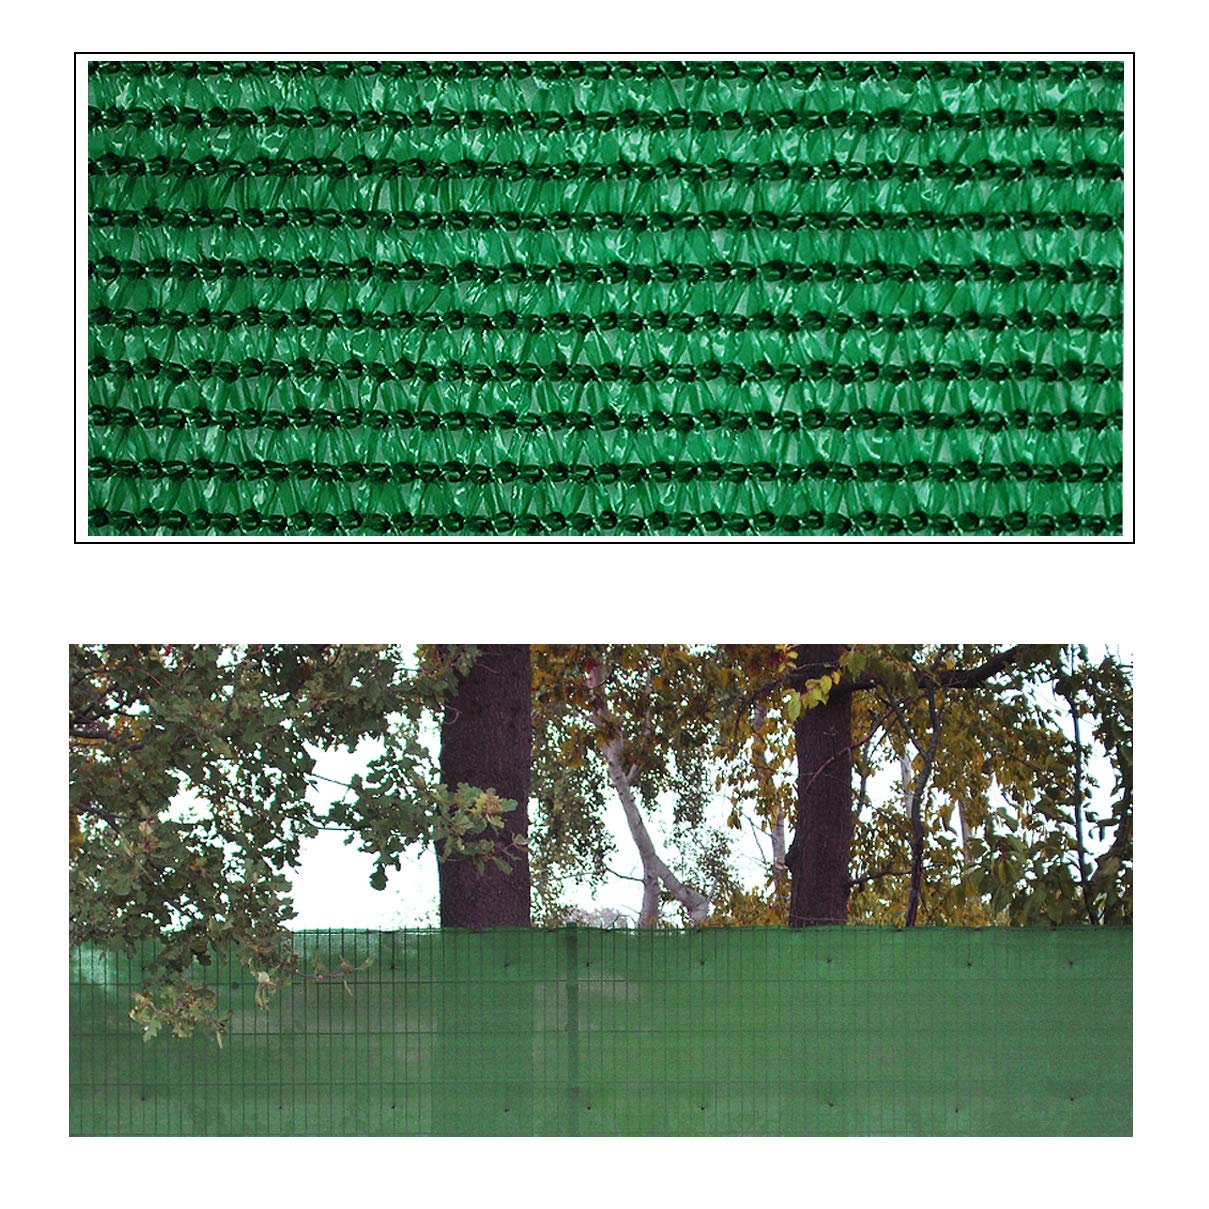 Helo 'G20' Sichtschutznetz Zaunblende 20 m Länge x 1 m Höhe (grün) aus HDPE Gewebe, hoch reißest, witterungs- und UV-beständig, ideal als Sichtschutz, Windschutz, Staubschutz oder Sonnenschutz Netz